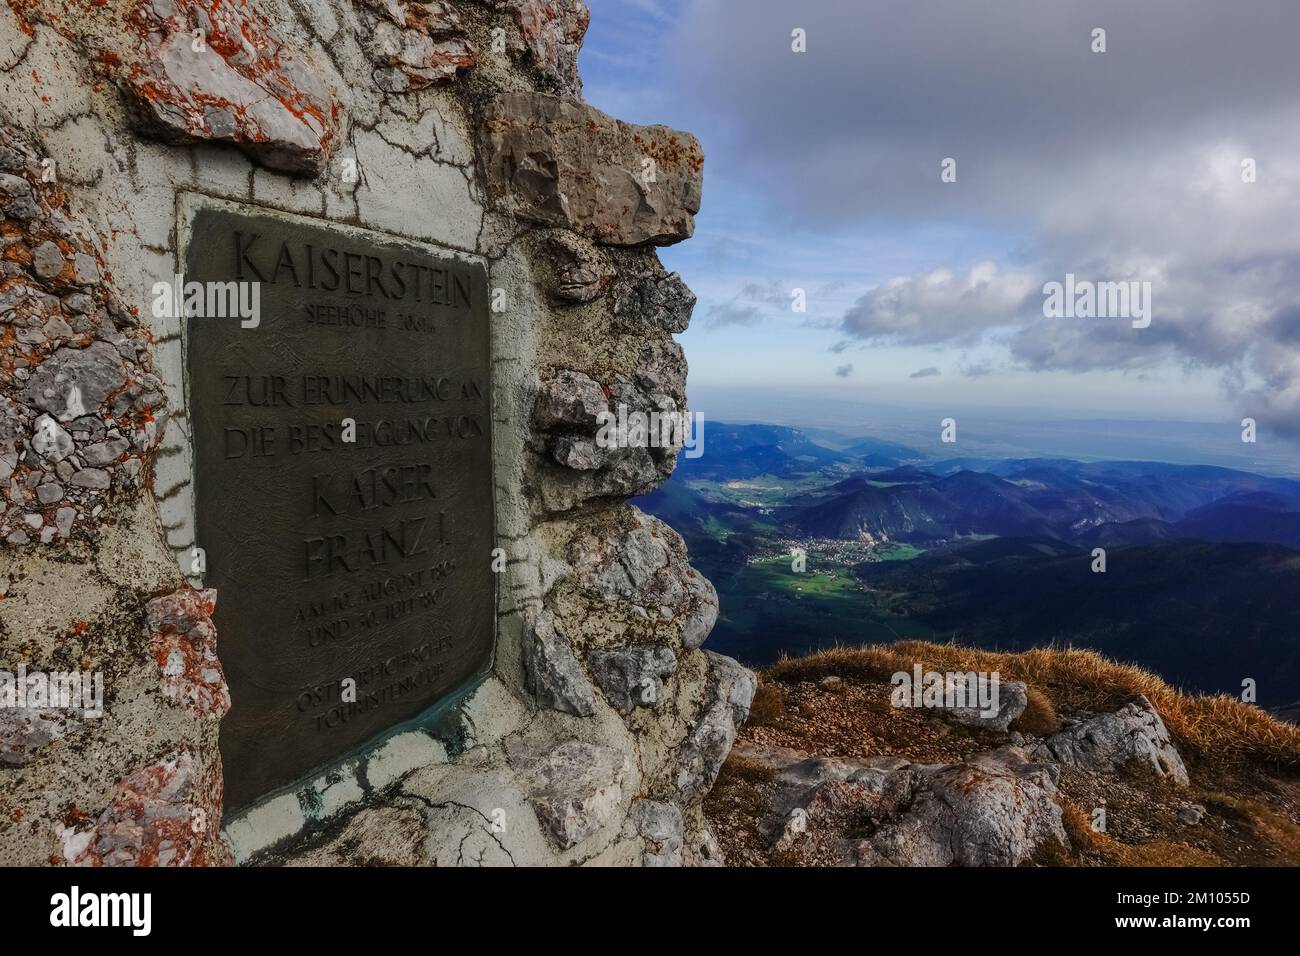 monument en pierre de l'ancien empereur d'autriche sur le sommet de la plus haute montagne d'autriche vue détaillée Banque D'Images